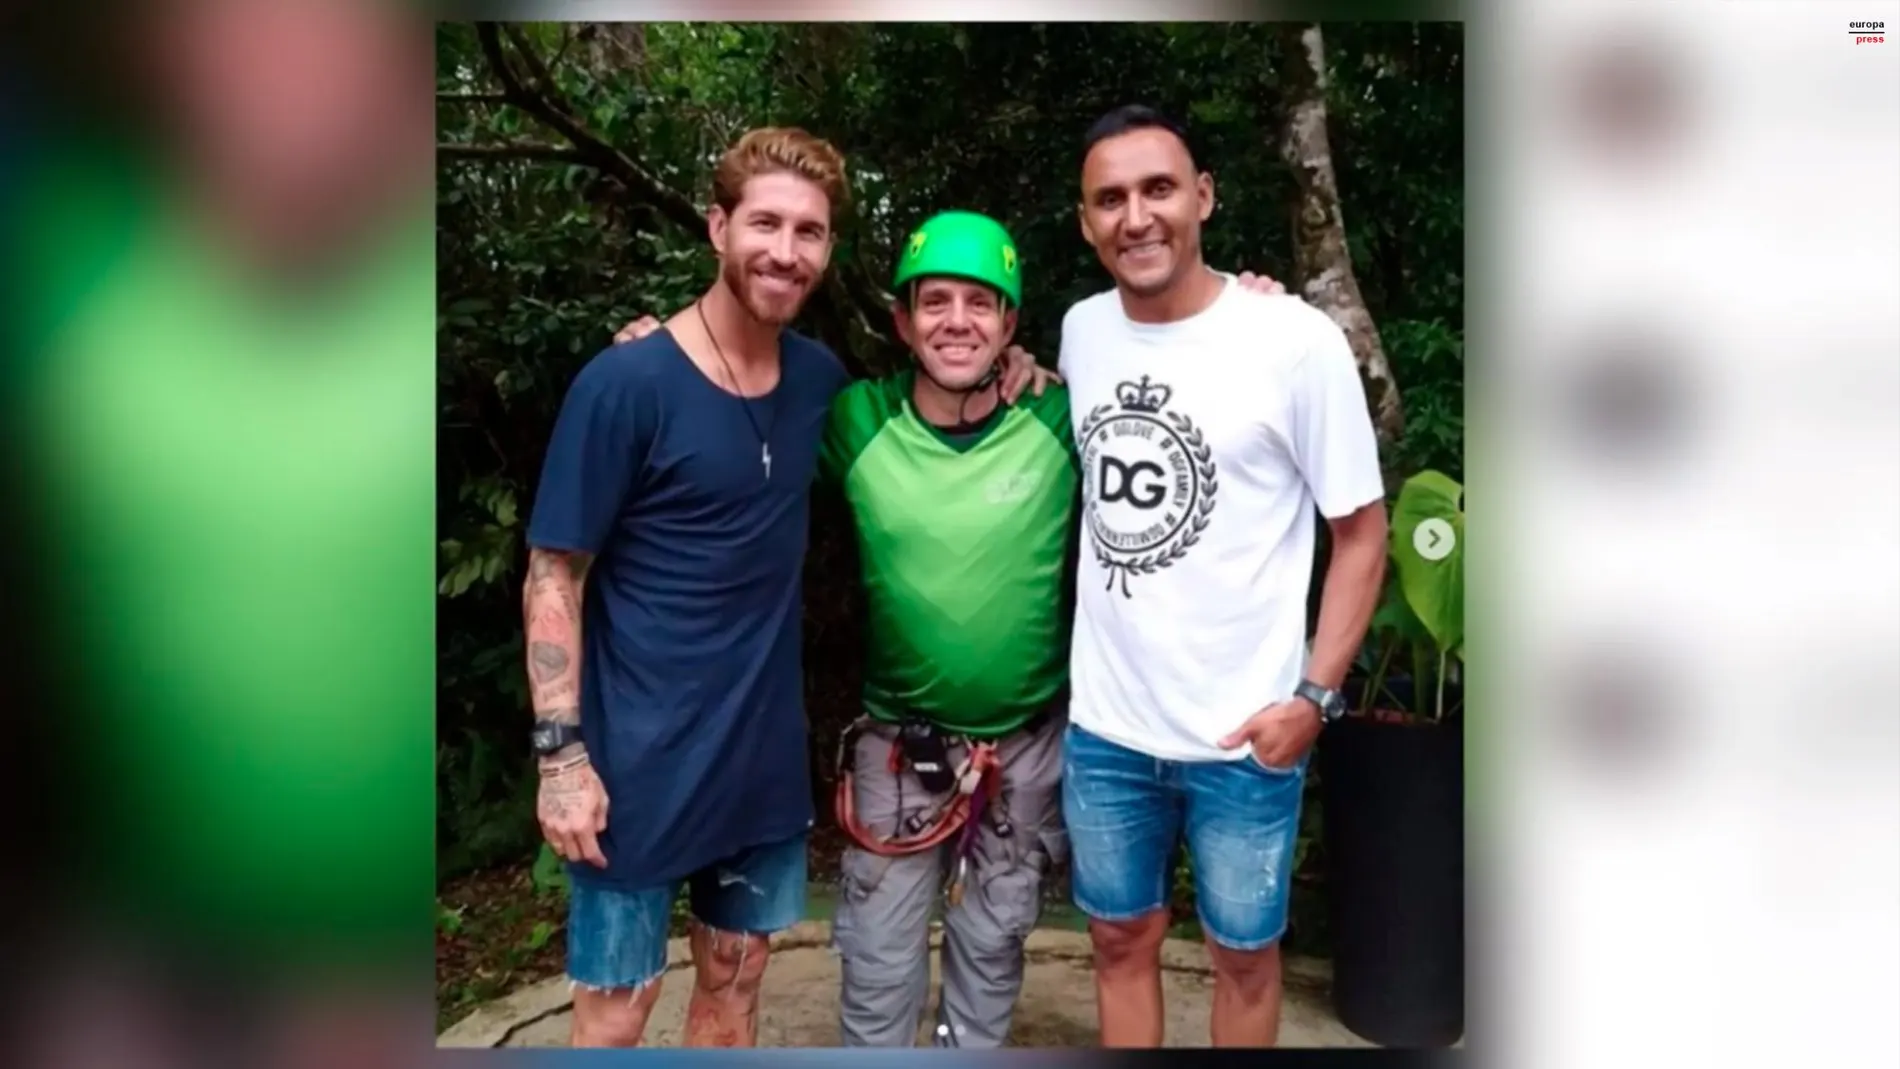 Sergio Ramos junto a Keylor Navas durante su viaje a Costa Rica